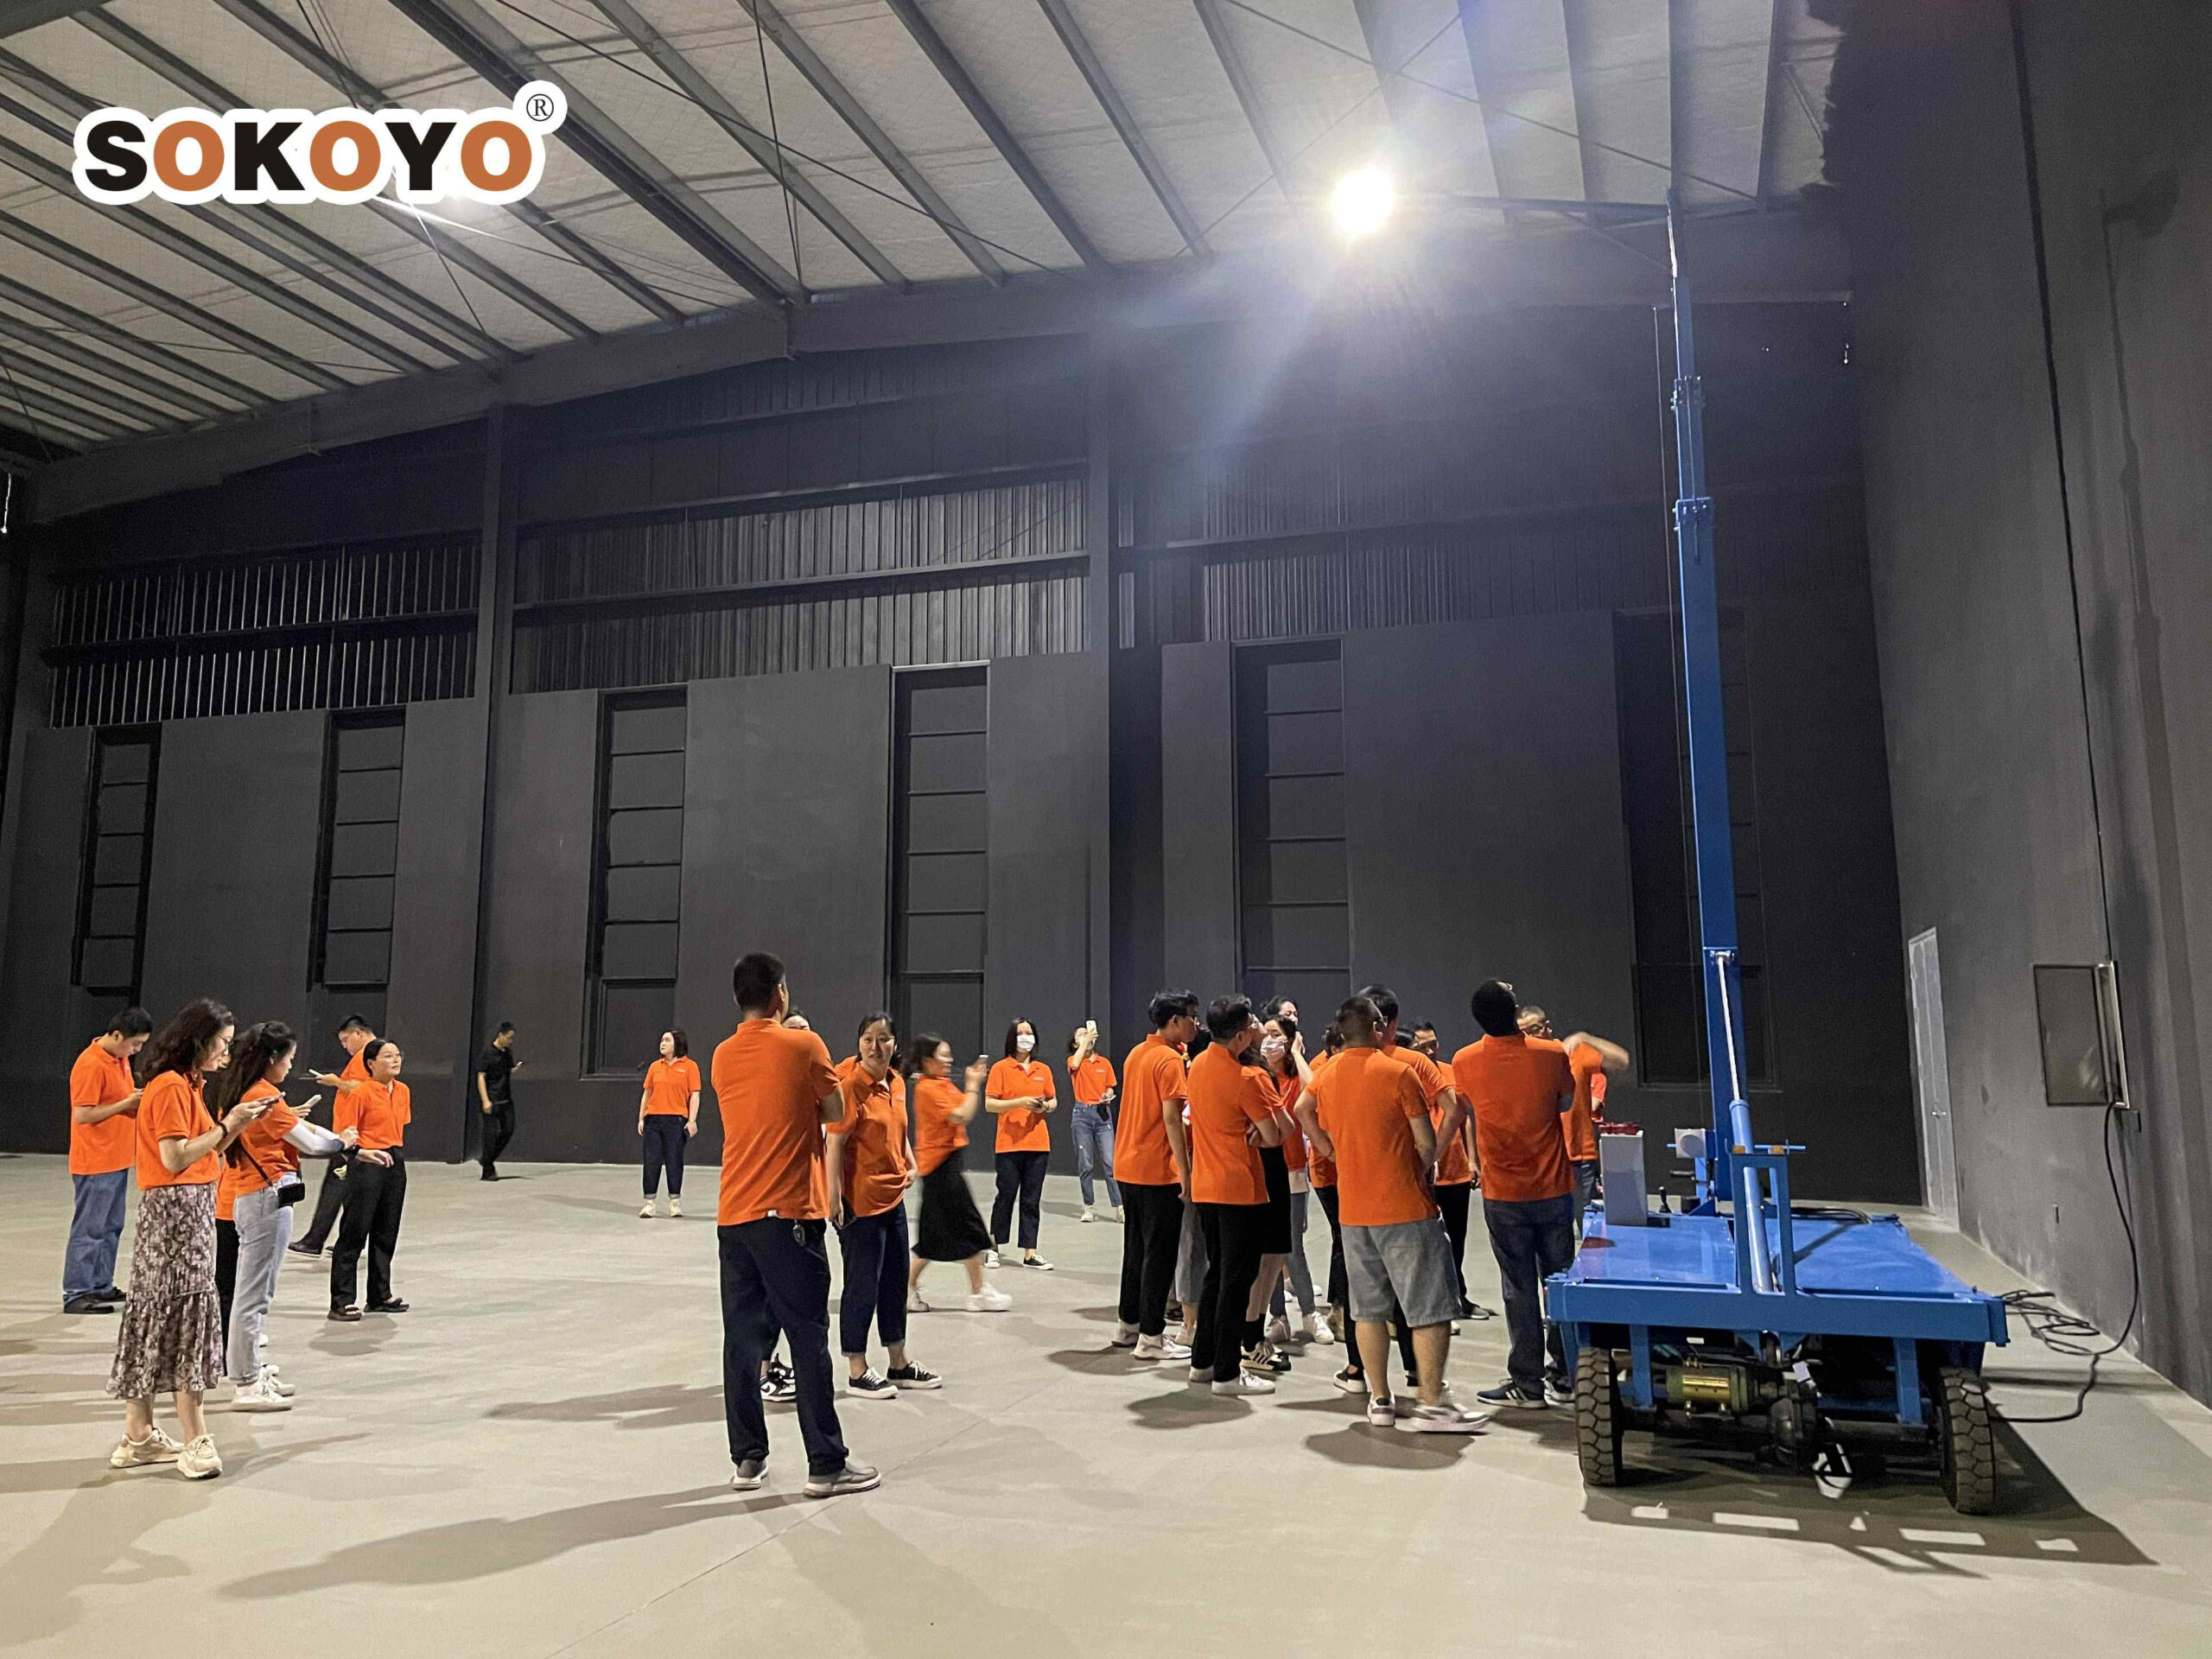 Công nhân nhà máy mặc áo màu cam tập trung quanh thiết bị màu xanh lam trong một cơ sở công nghiệp rộng rãi được chiếu sáng bằng đèn trên cao